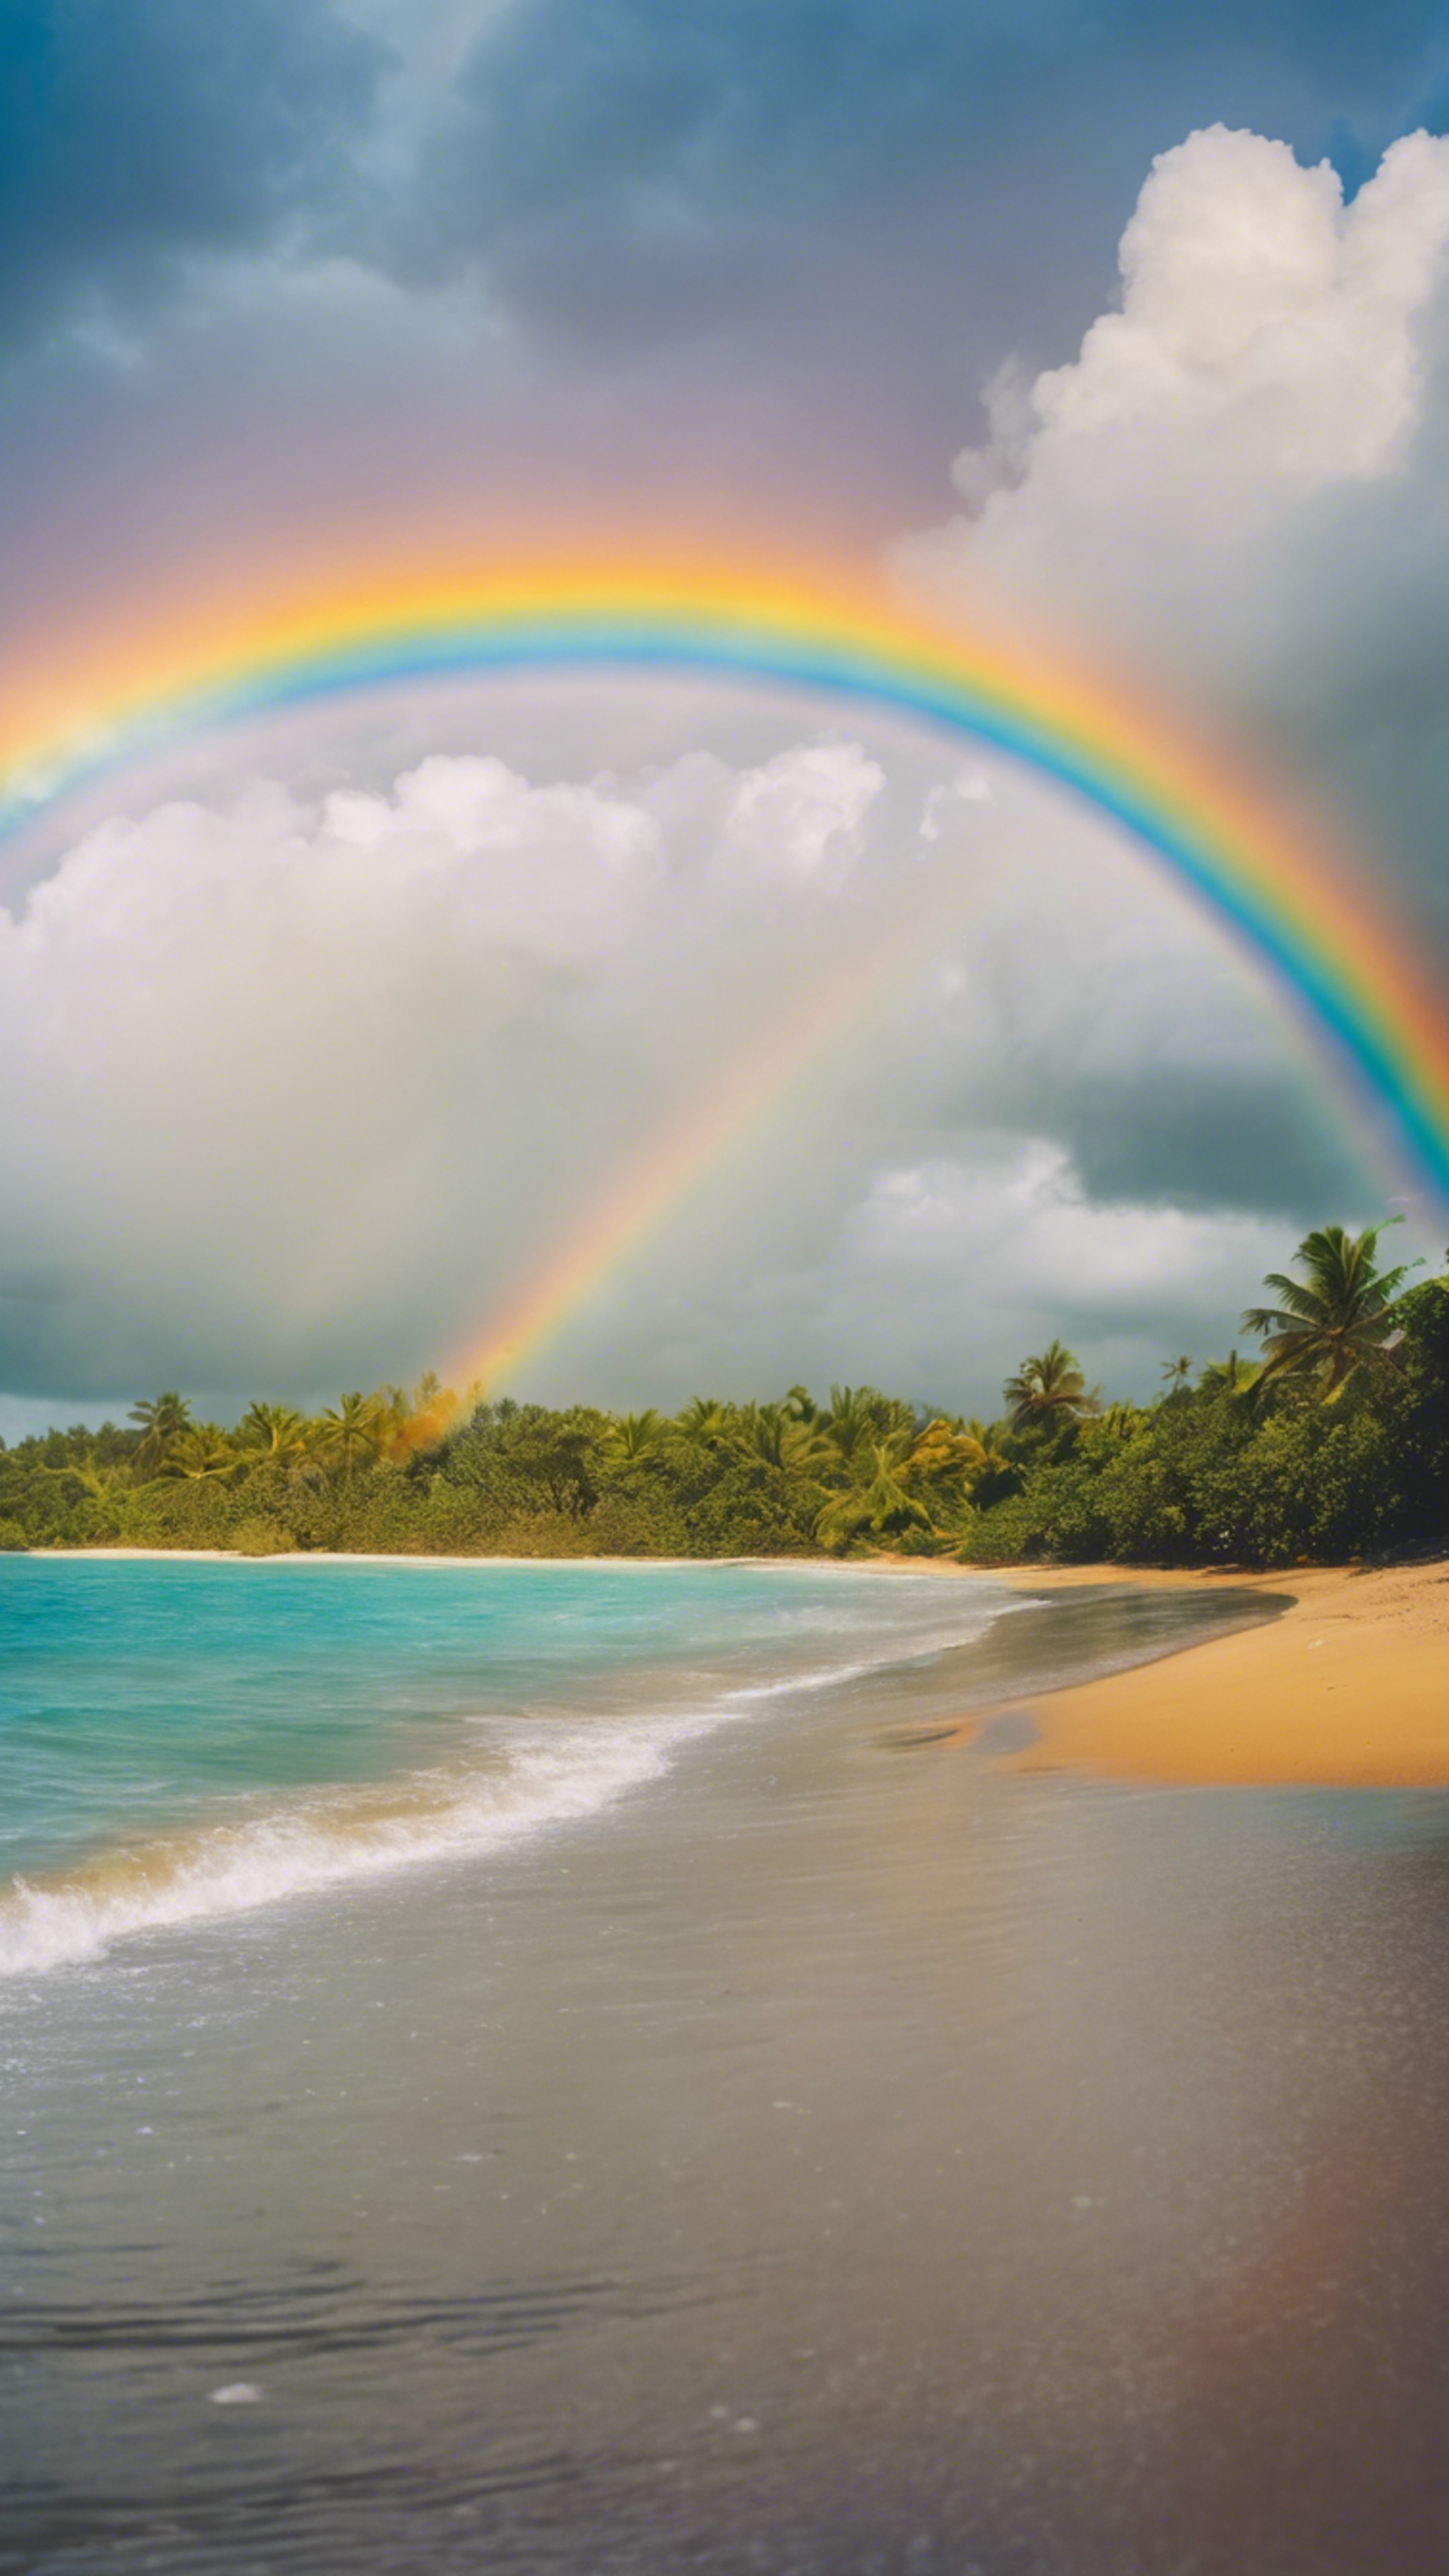 Vivid rainbow arcing across the sky after a rainfall at a tropical beach. Tapet[d3854ca165cf432a9c18]